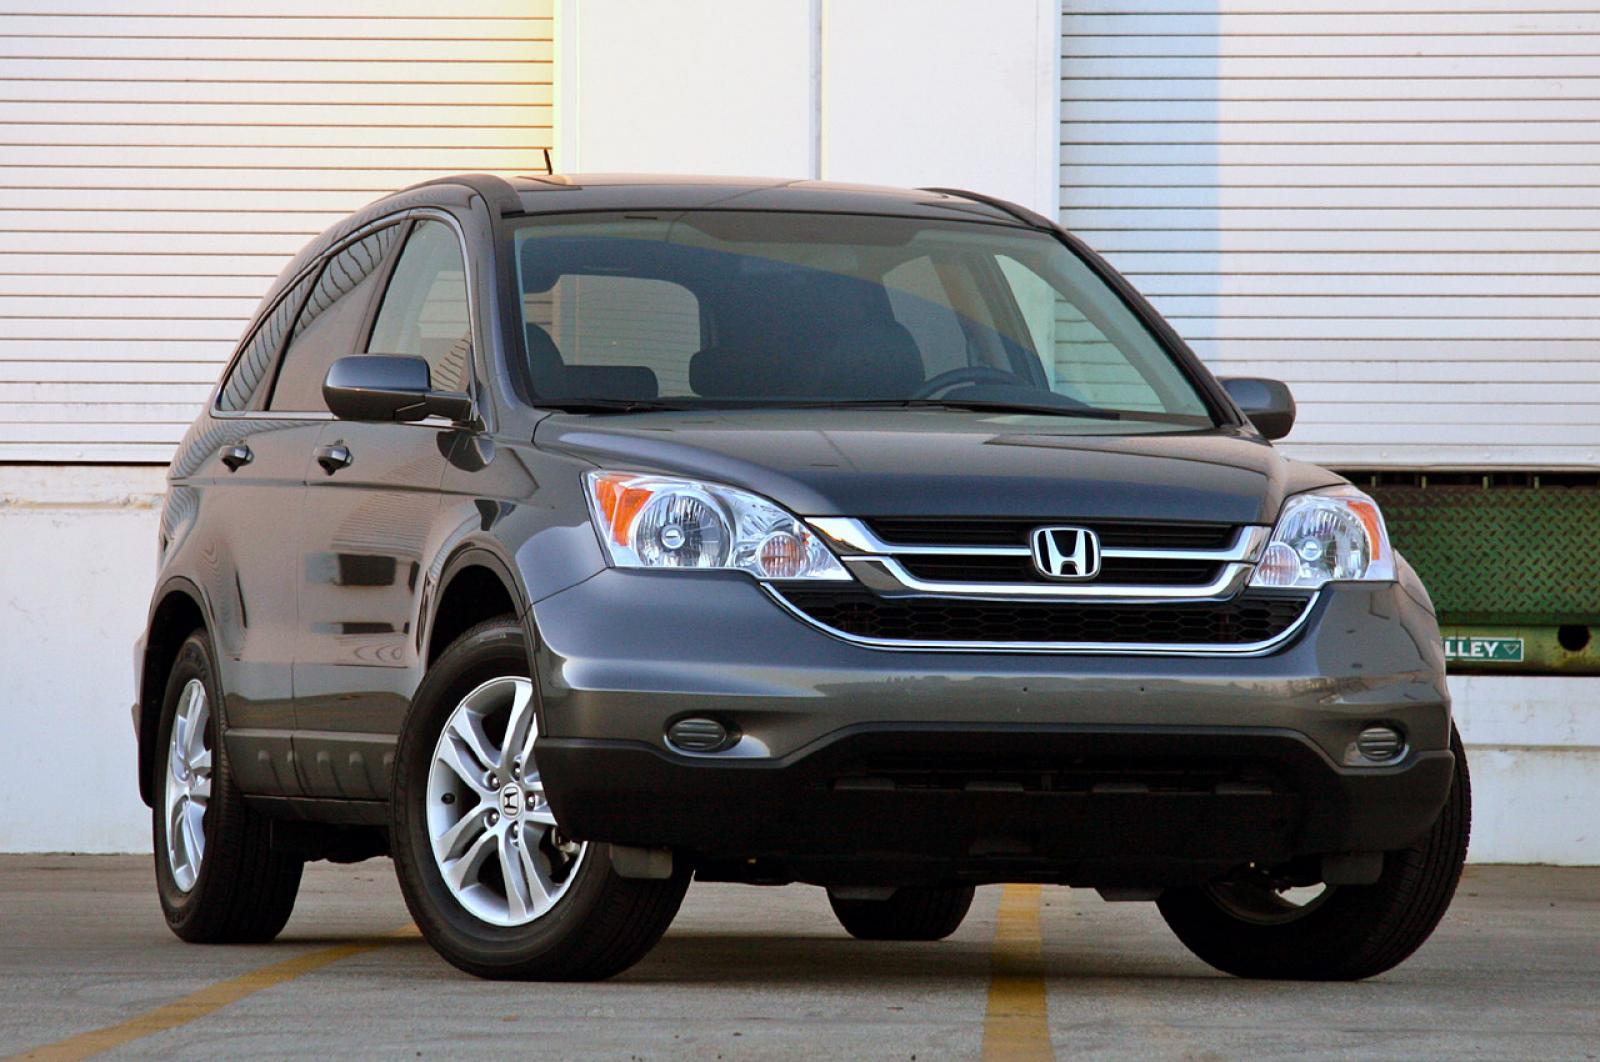 Honda crv кузова. Honda CR-V 2010. Honda CRV 2010. Honda CR-V 3 2010. Хонда СРВ 2010.